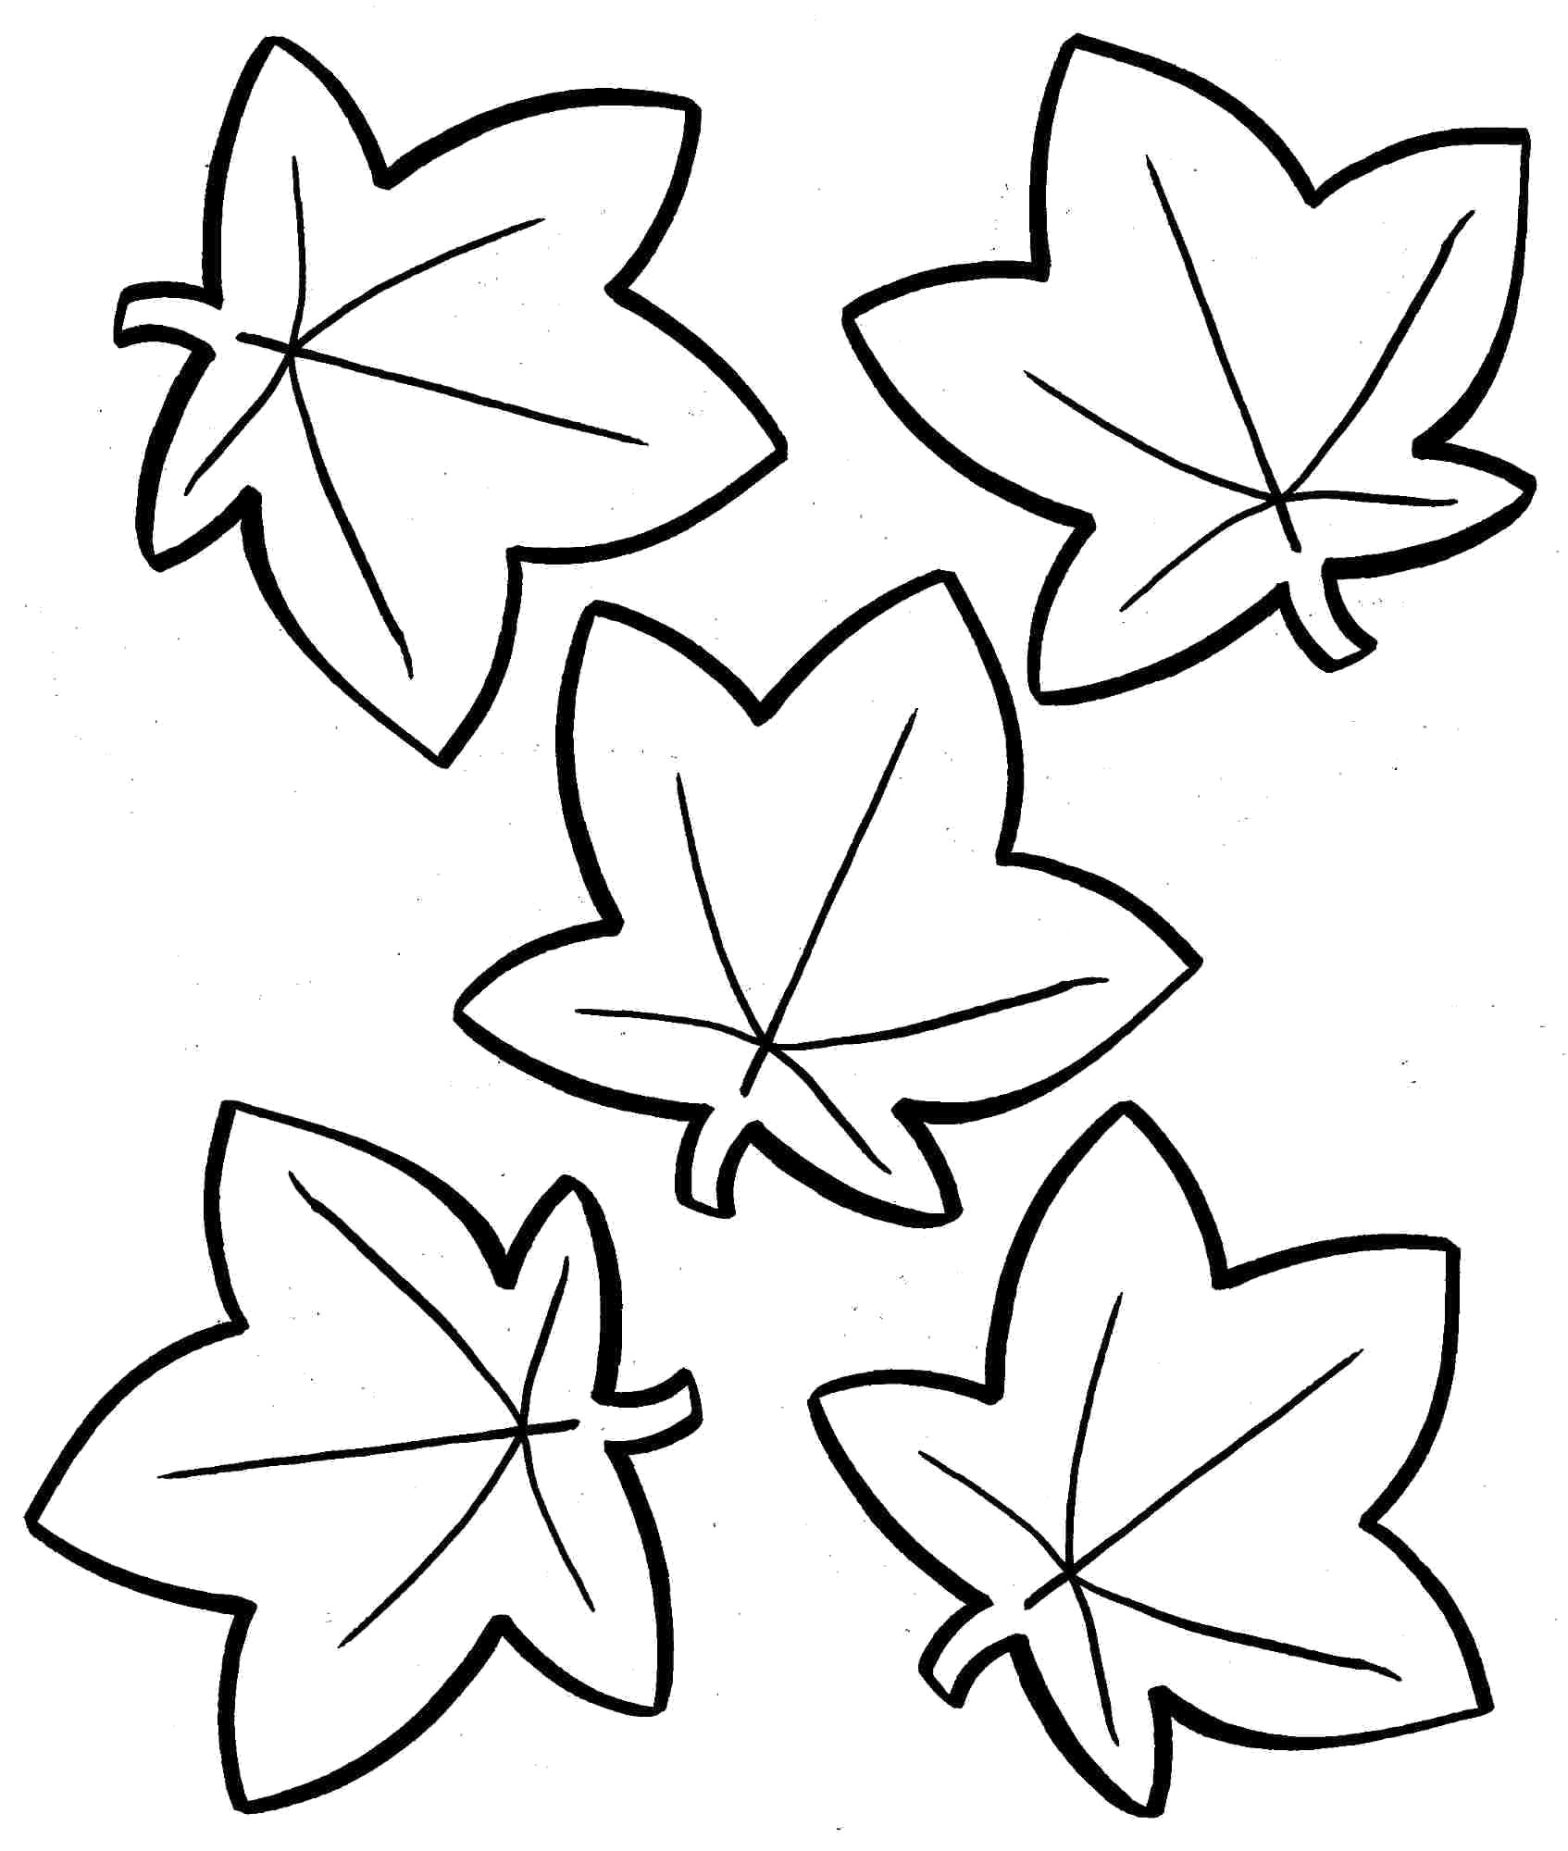 Раскраска с контурами листьев для вырезания (листья, контуры)